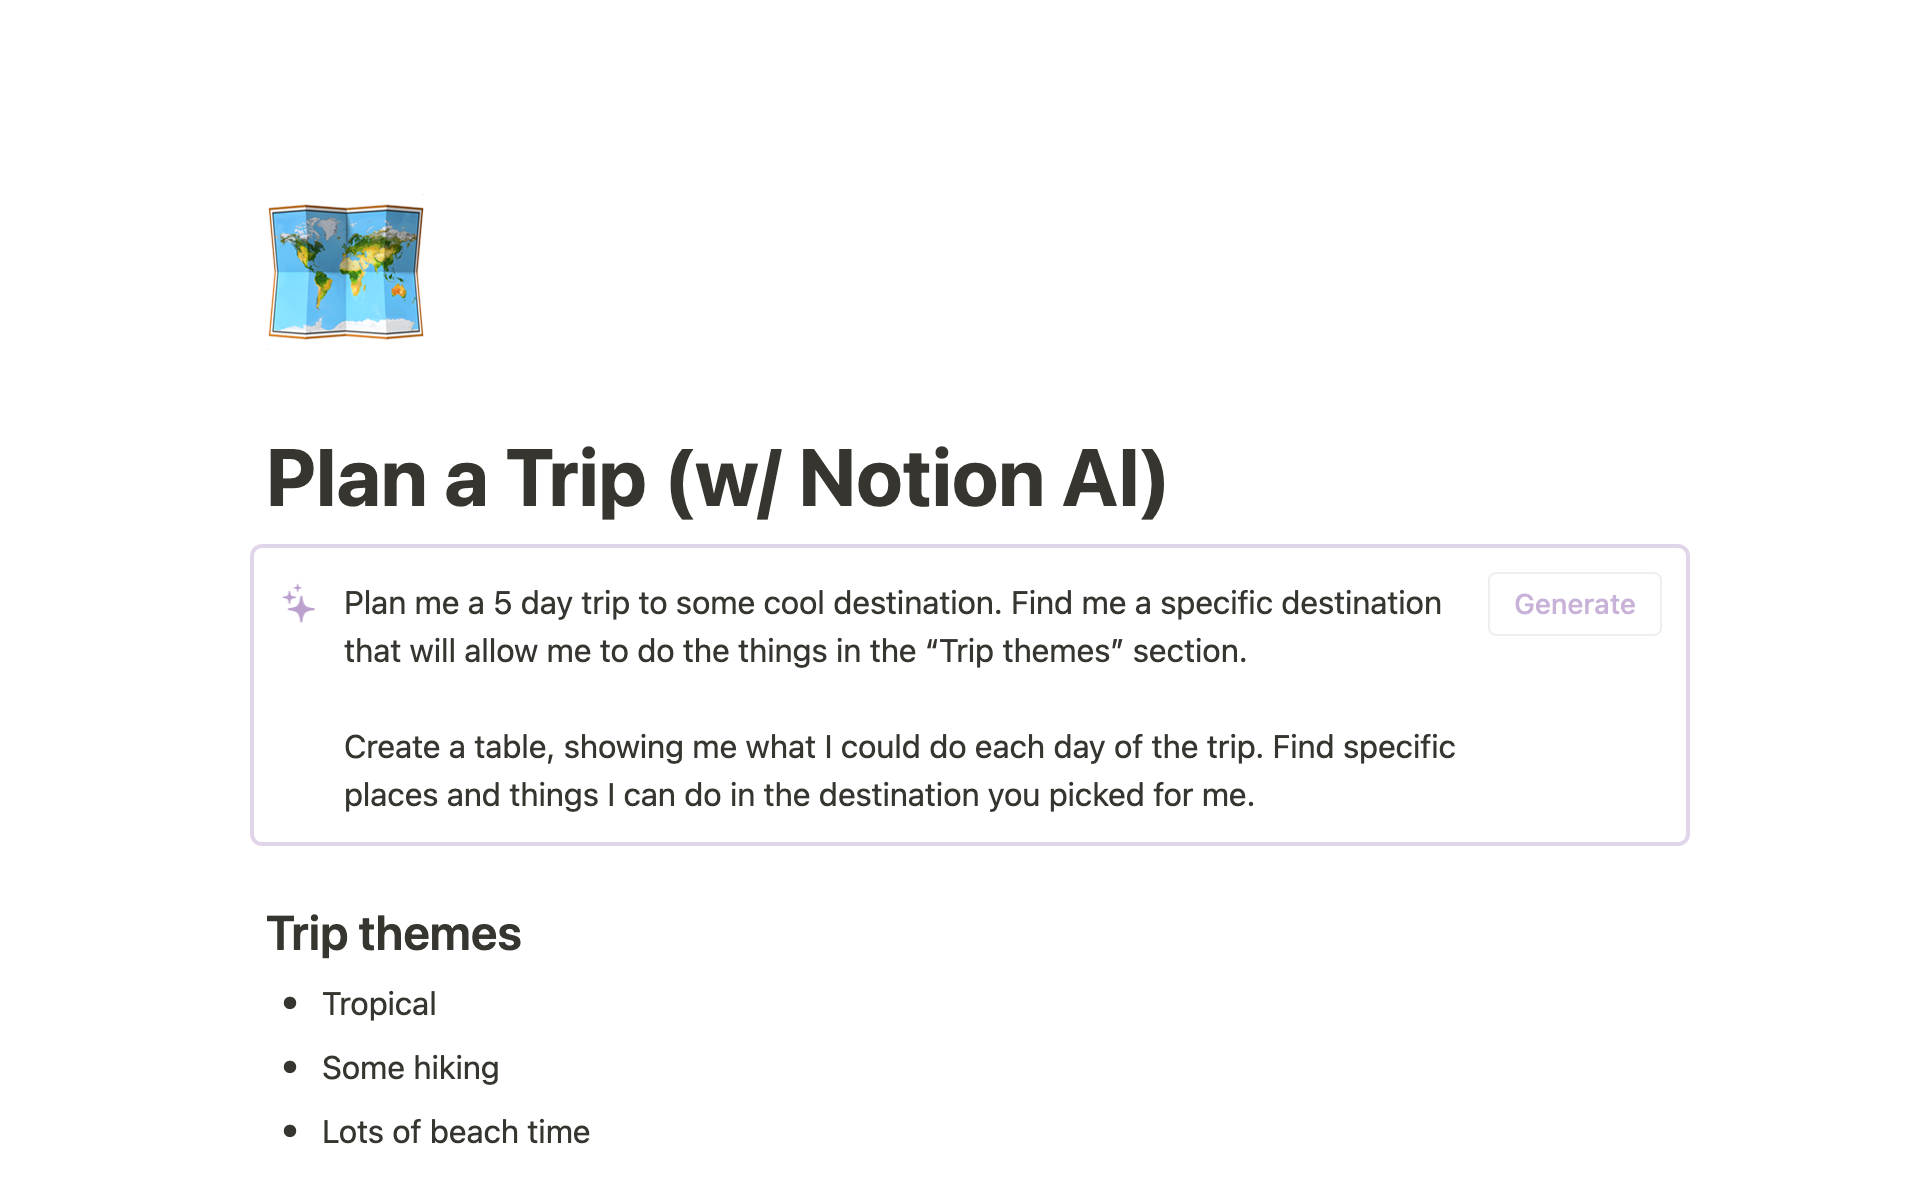 Uma prévia do modelo para Plan a Trip (w/ Notion AI)